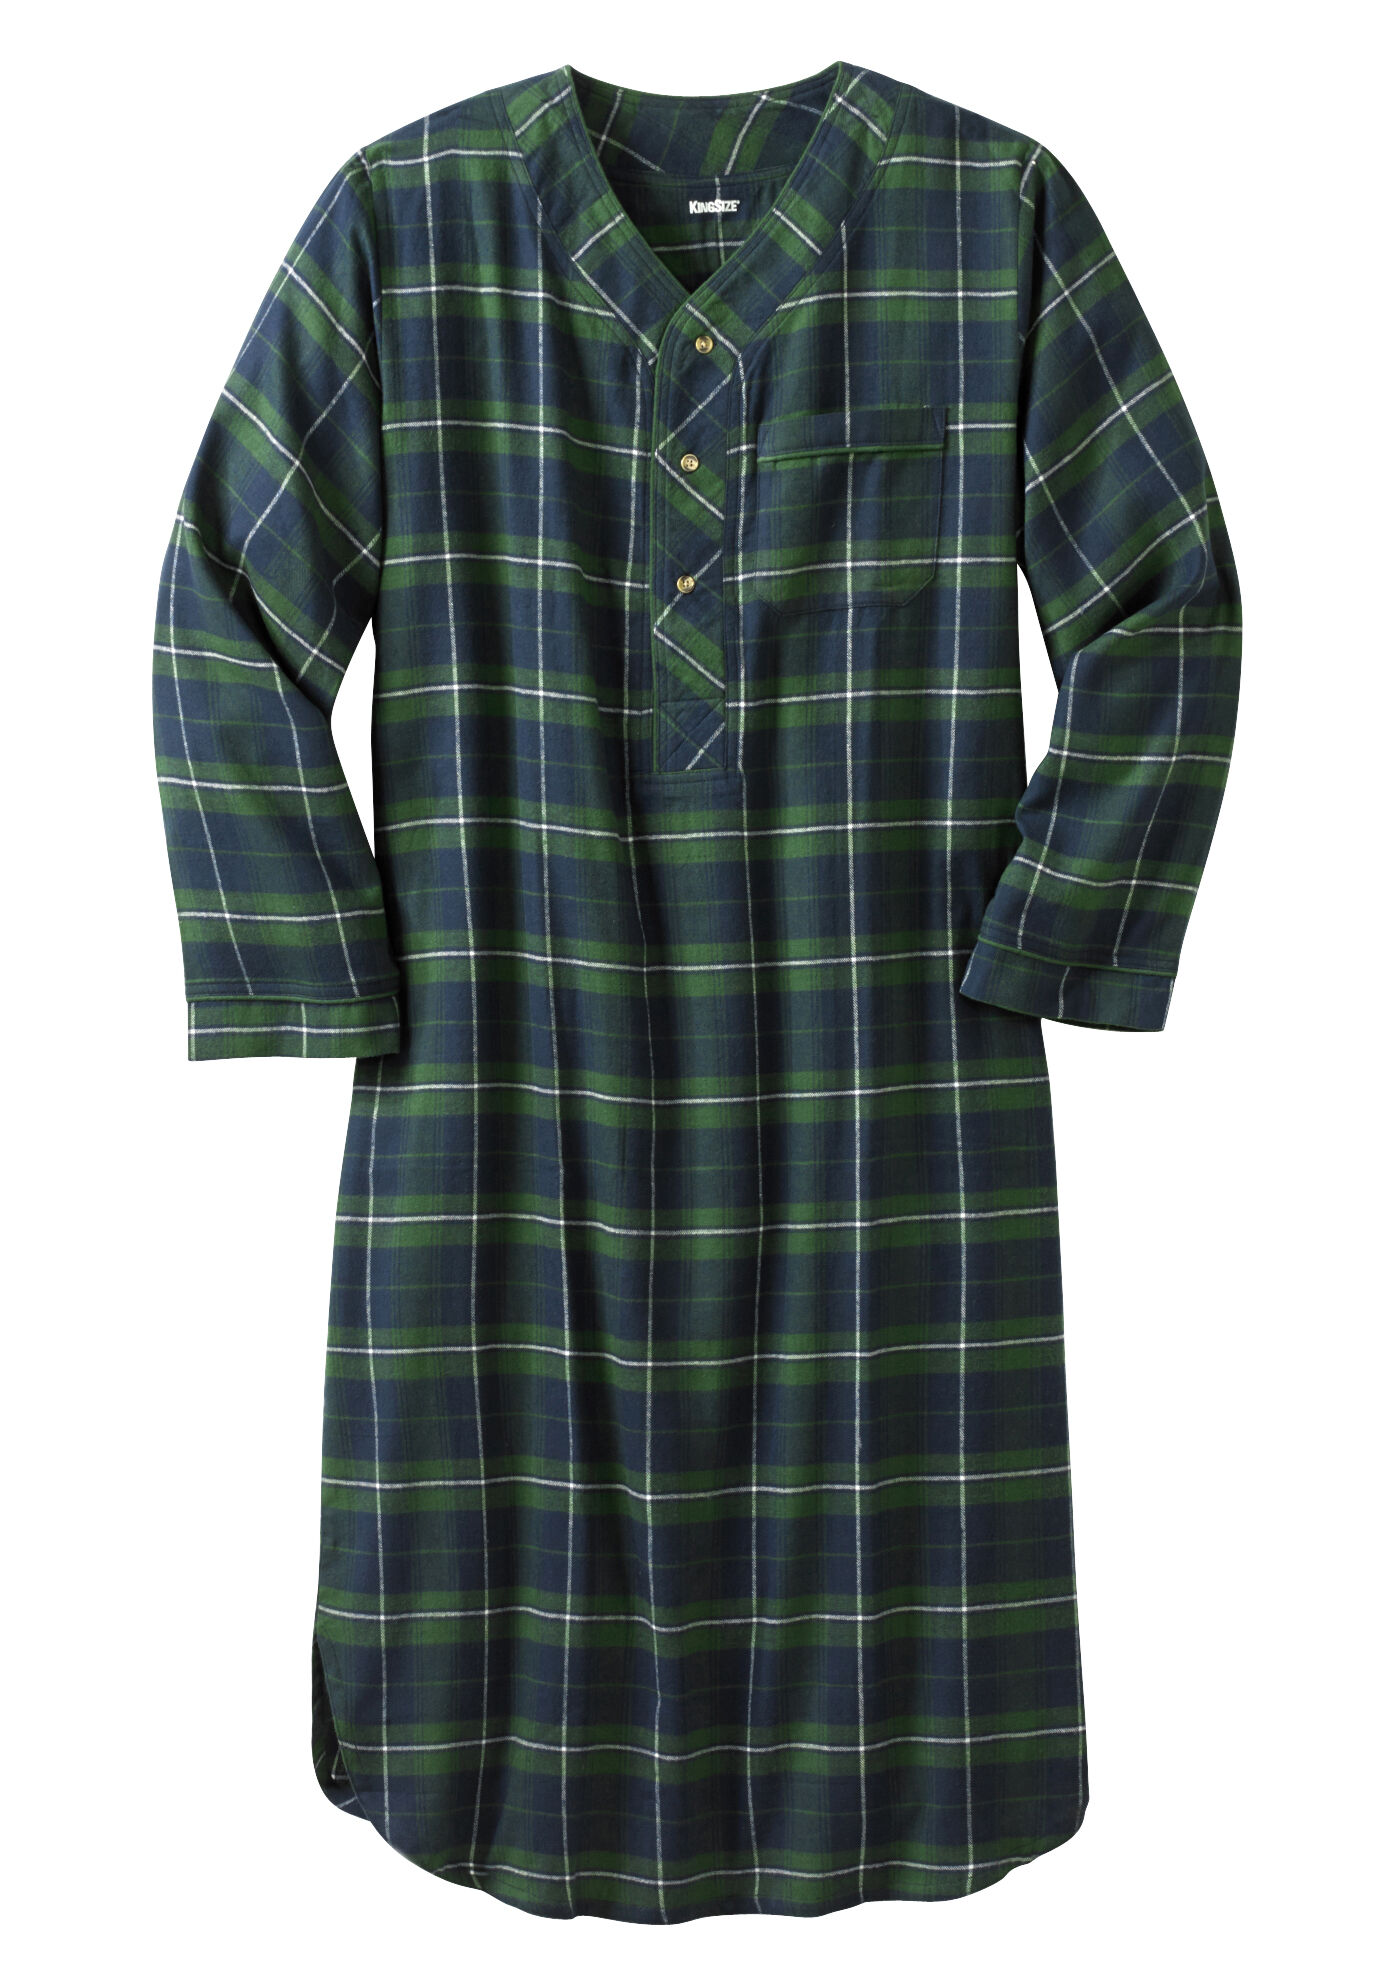 Kingsize Men's Big & Tall Plaid Flannel Nightshirt Pajamas - Walmart.com